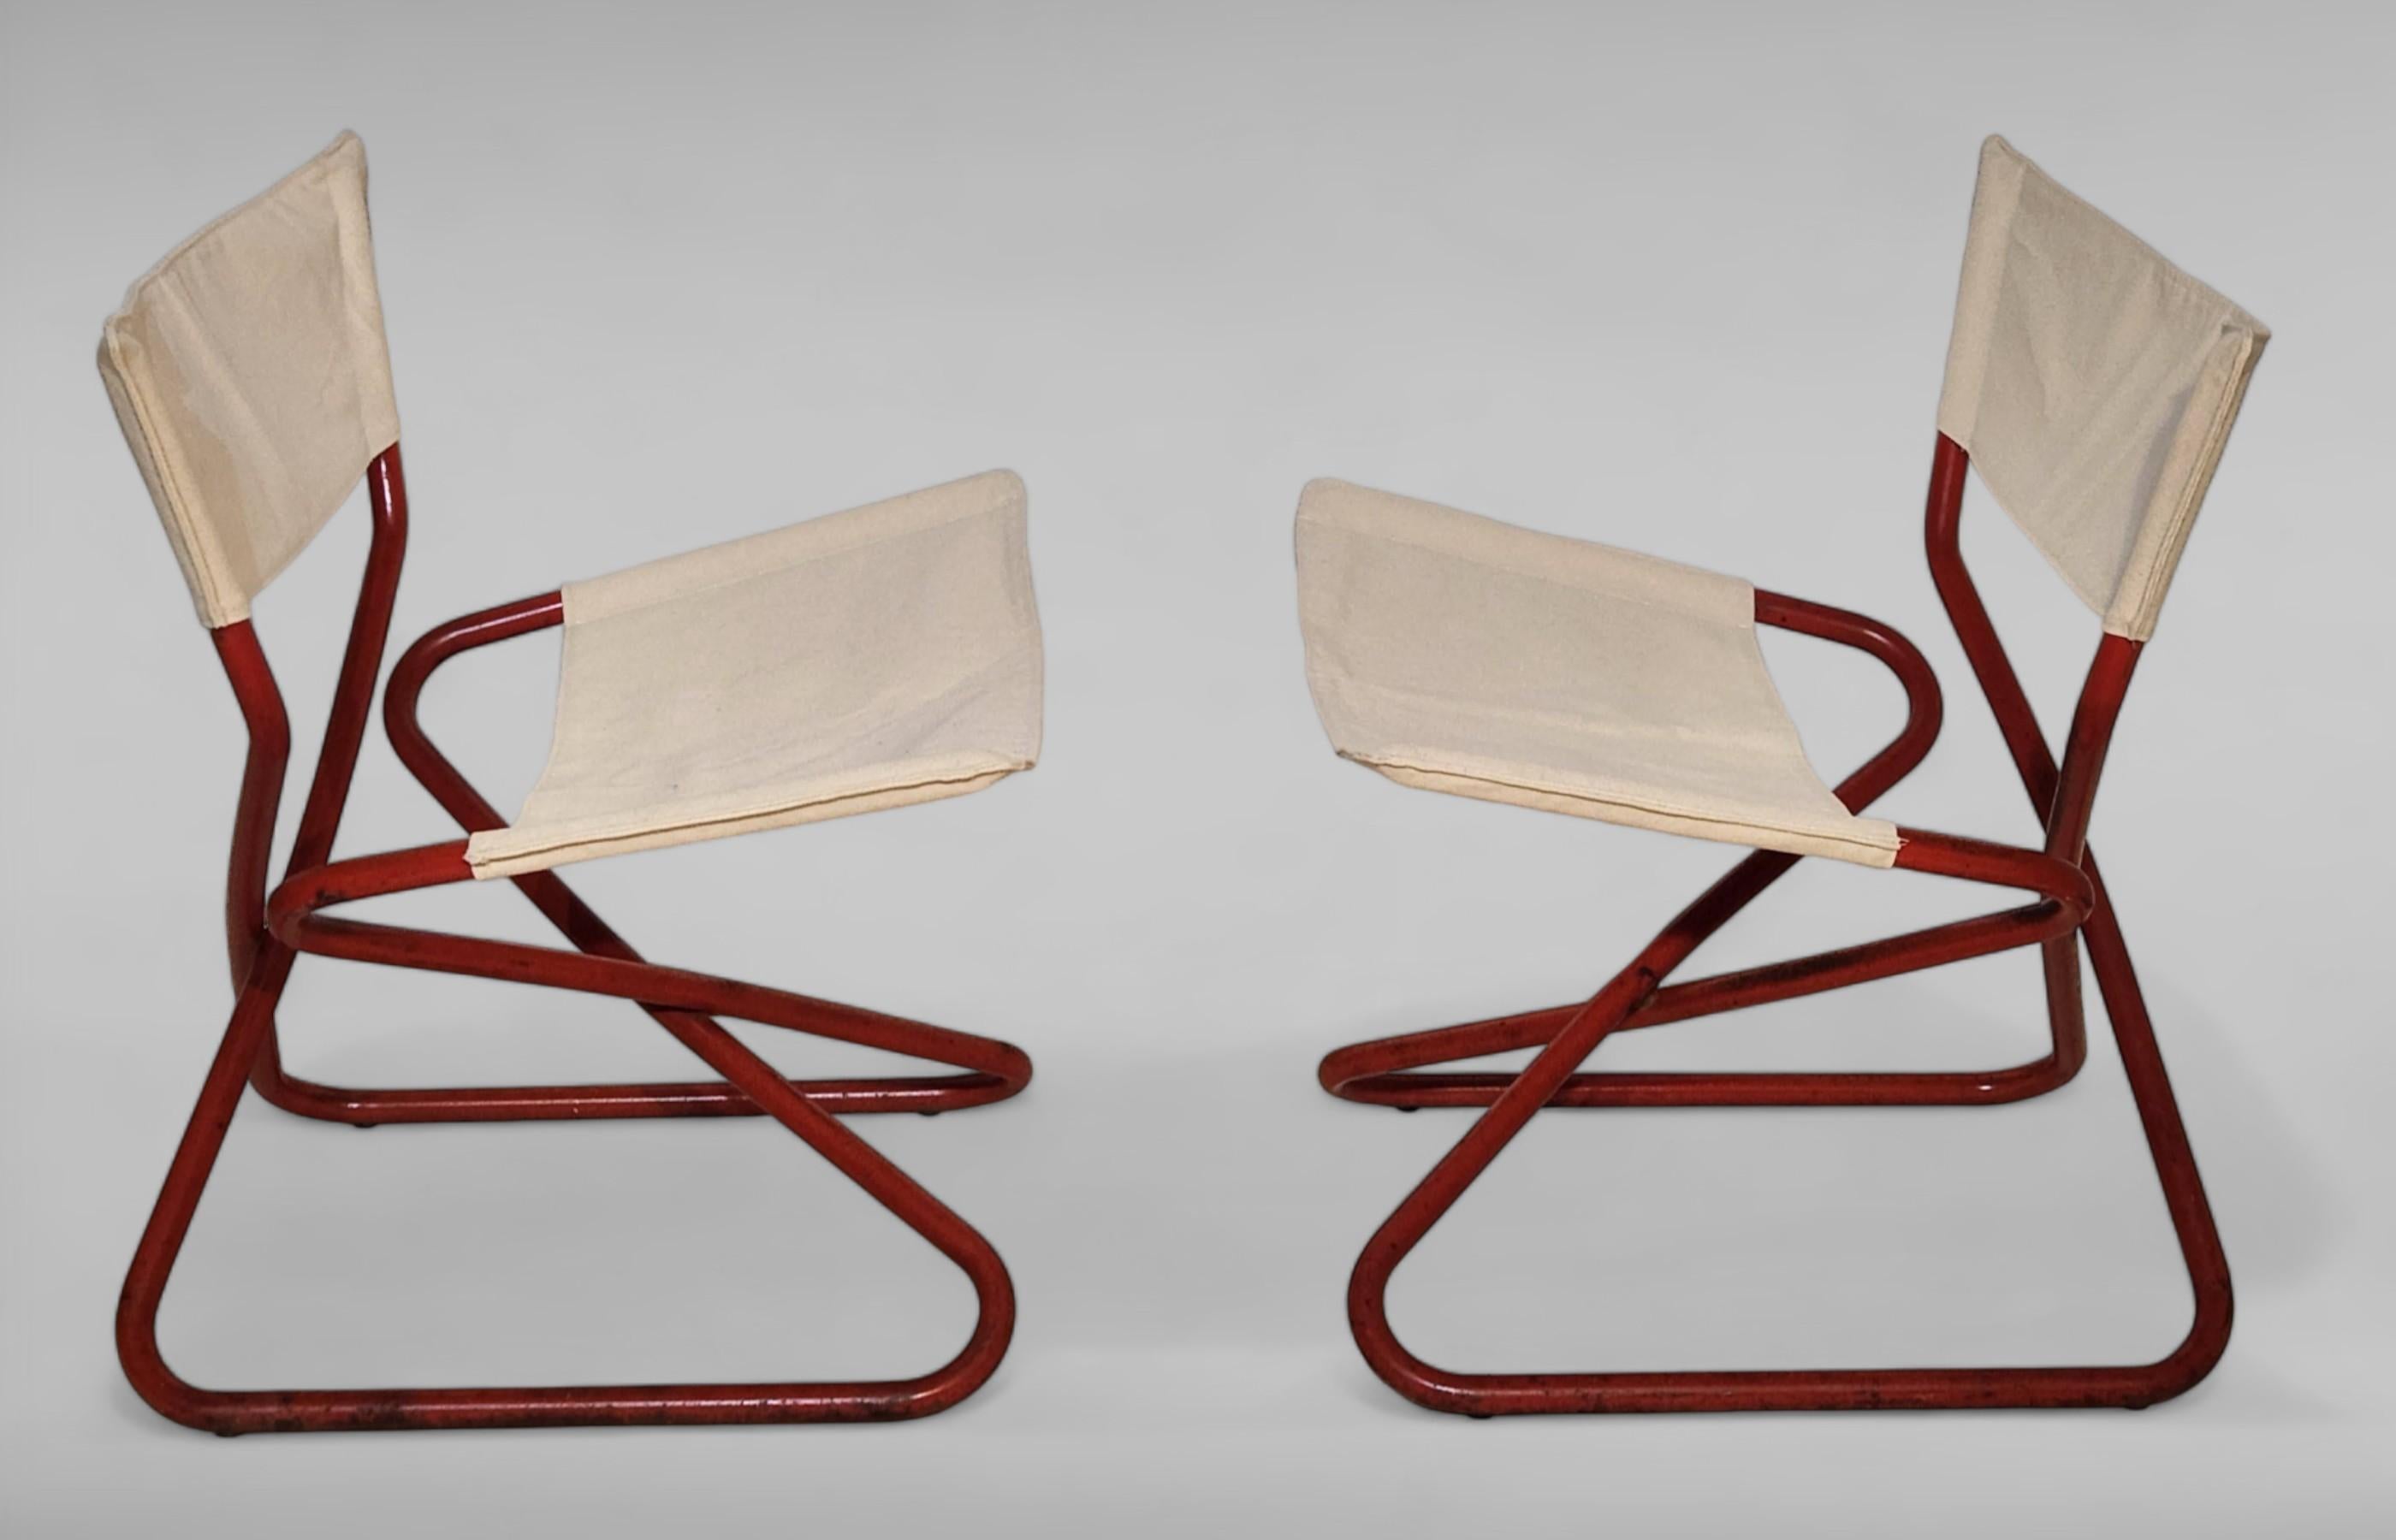 Rare paire de fauteuils Z easy chairs conçus par Erik Magnussen. Fabriquées par Torben Ørskov au Danemark c. 1968 chaises pliantes.
Peinture originale et tapisserie d'ameublement en toile. 
Le prix correspond à la paire.
L'expédition de la paire